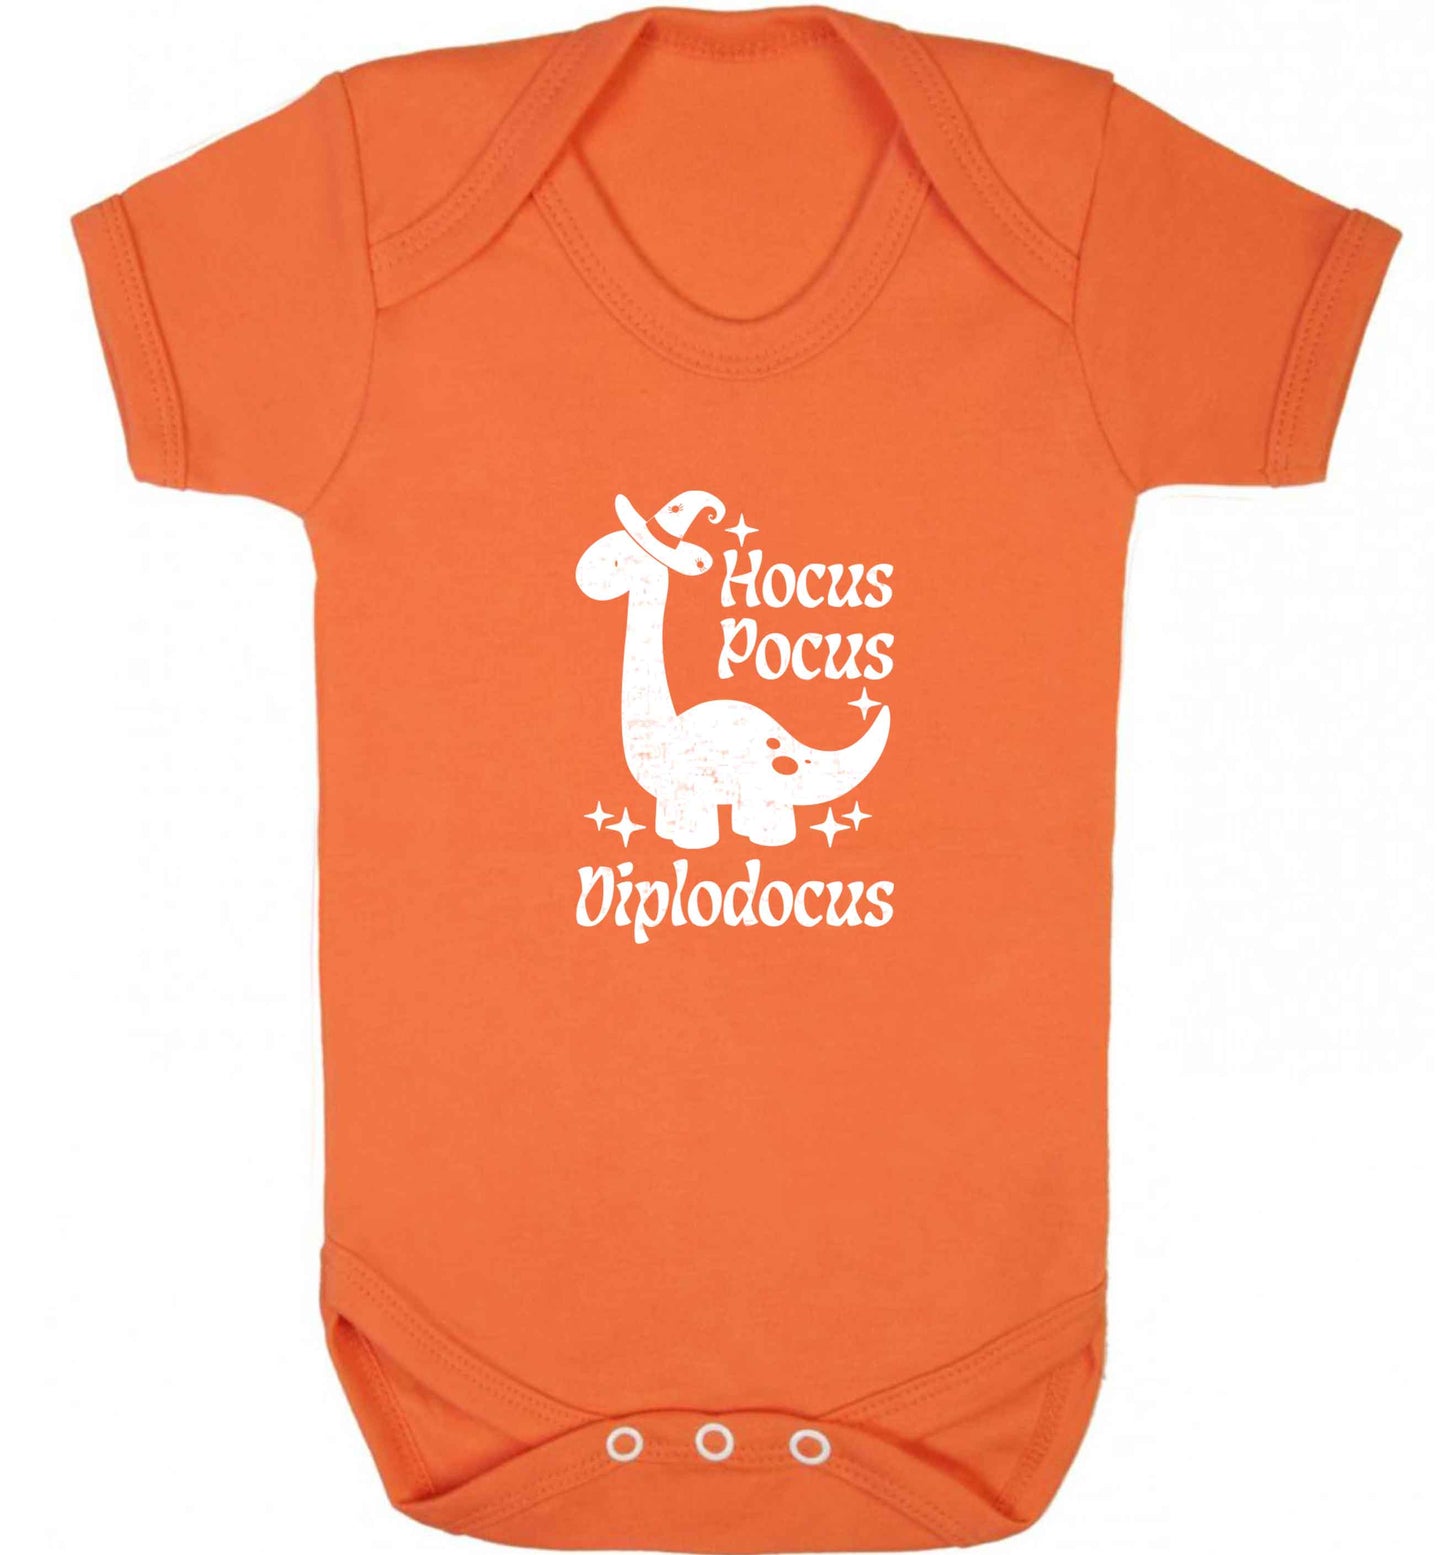 Hocus pocus diplodocus Kit baby vest orange 18-24 months